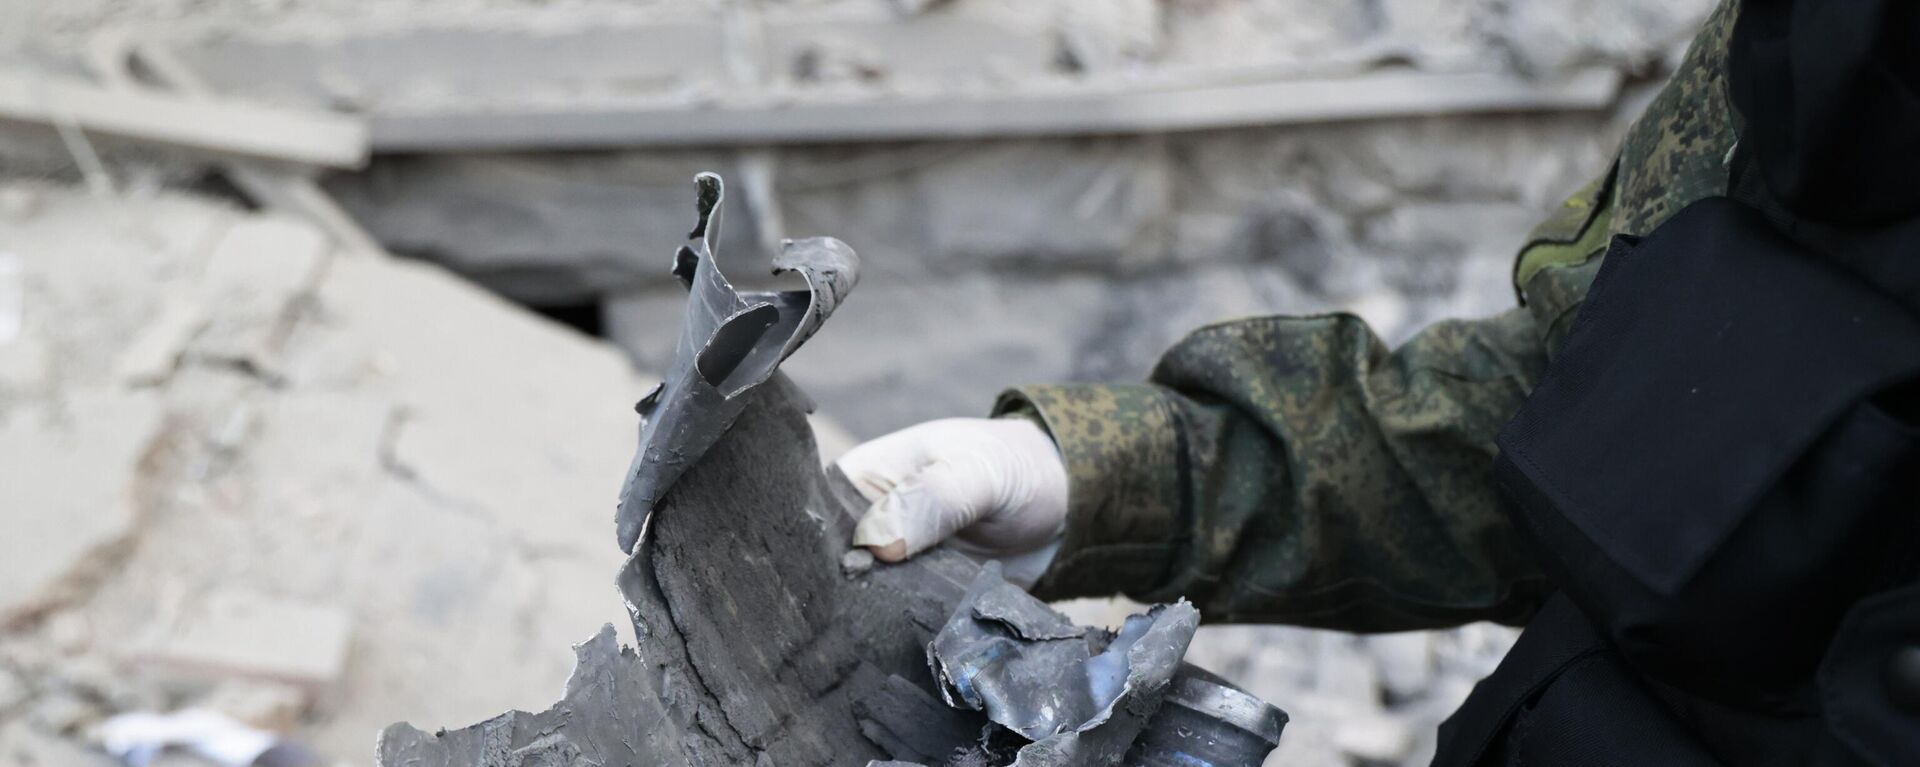 Следователь СЦ РФ демонстрирует часть снаряда на месте пострадавшего в результате обстрела со стороны ВСУ здания городской администрации в центре Донецка - Sputnik Абхазия, 1920, 15.12.2022